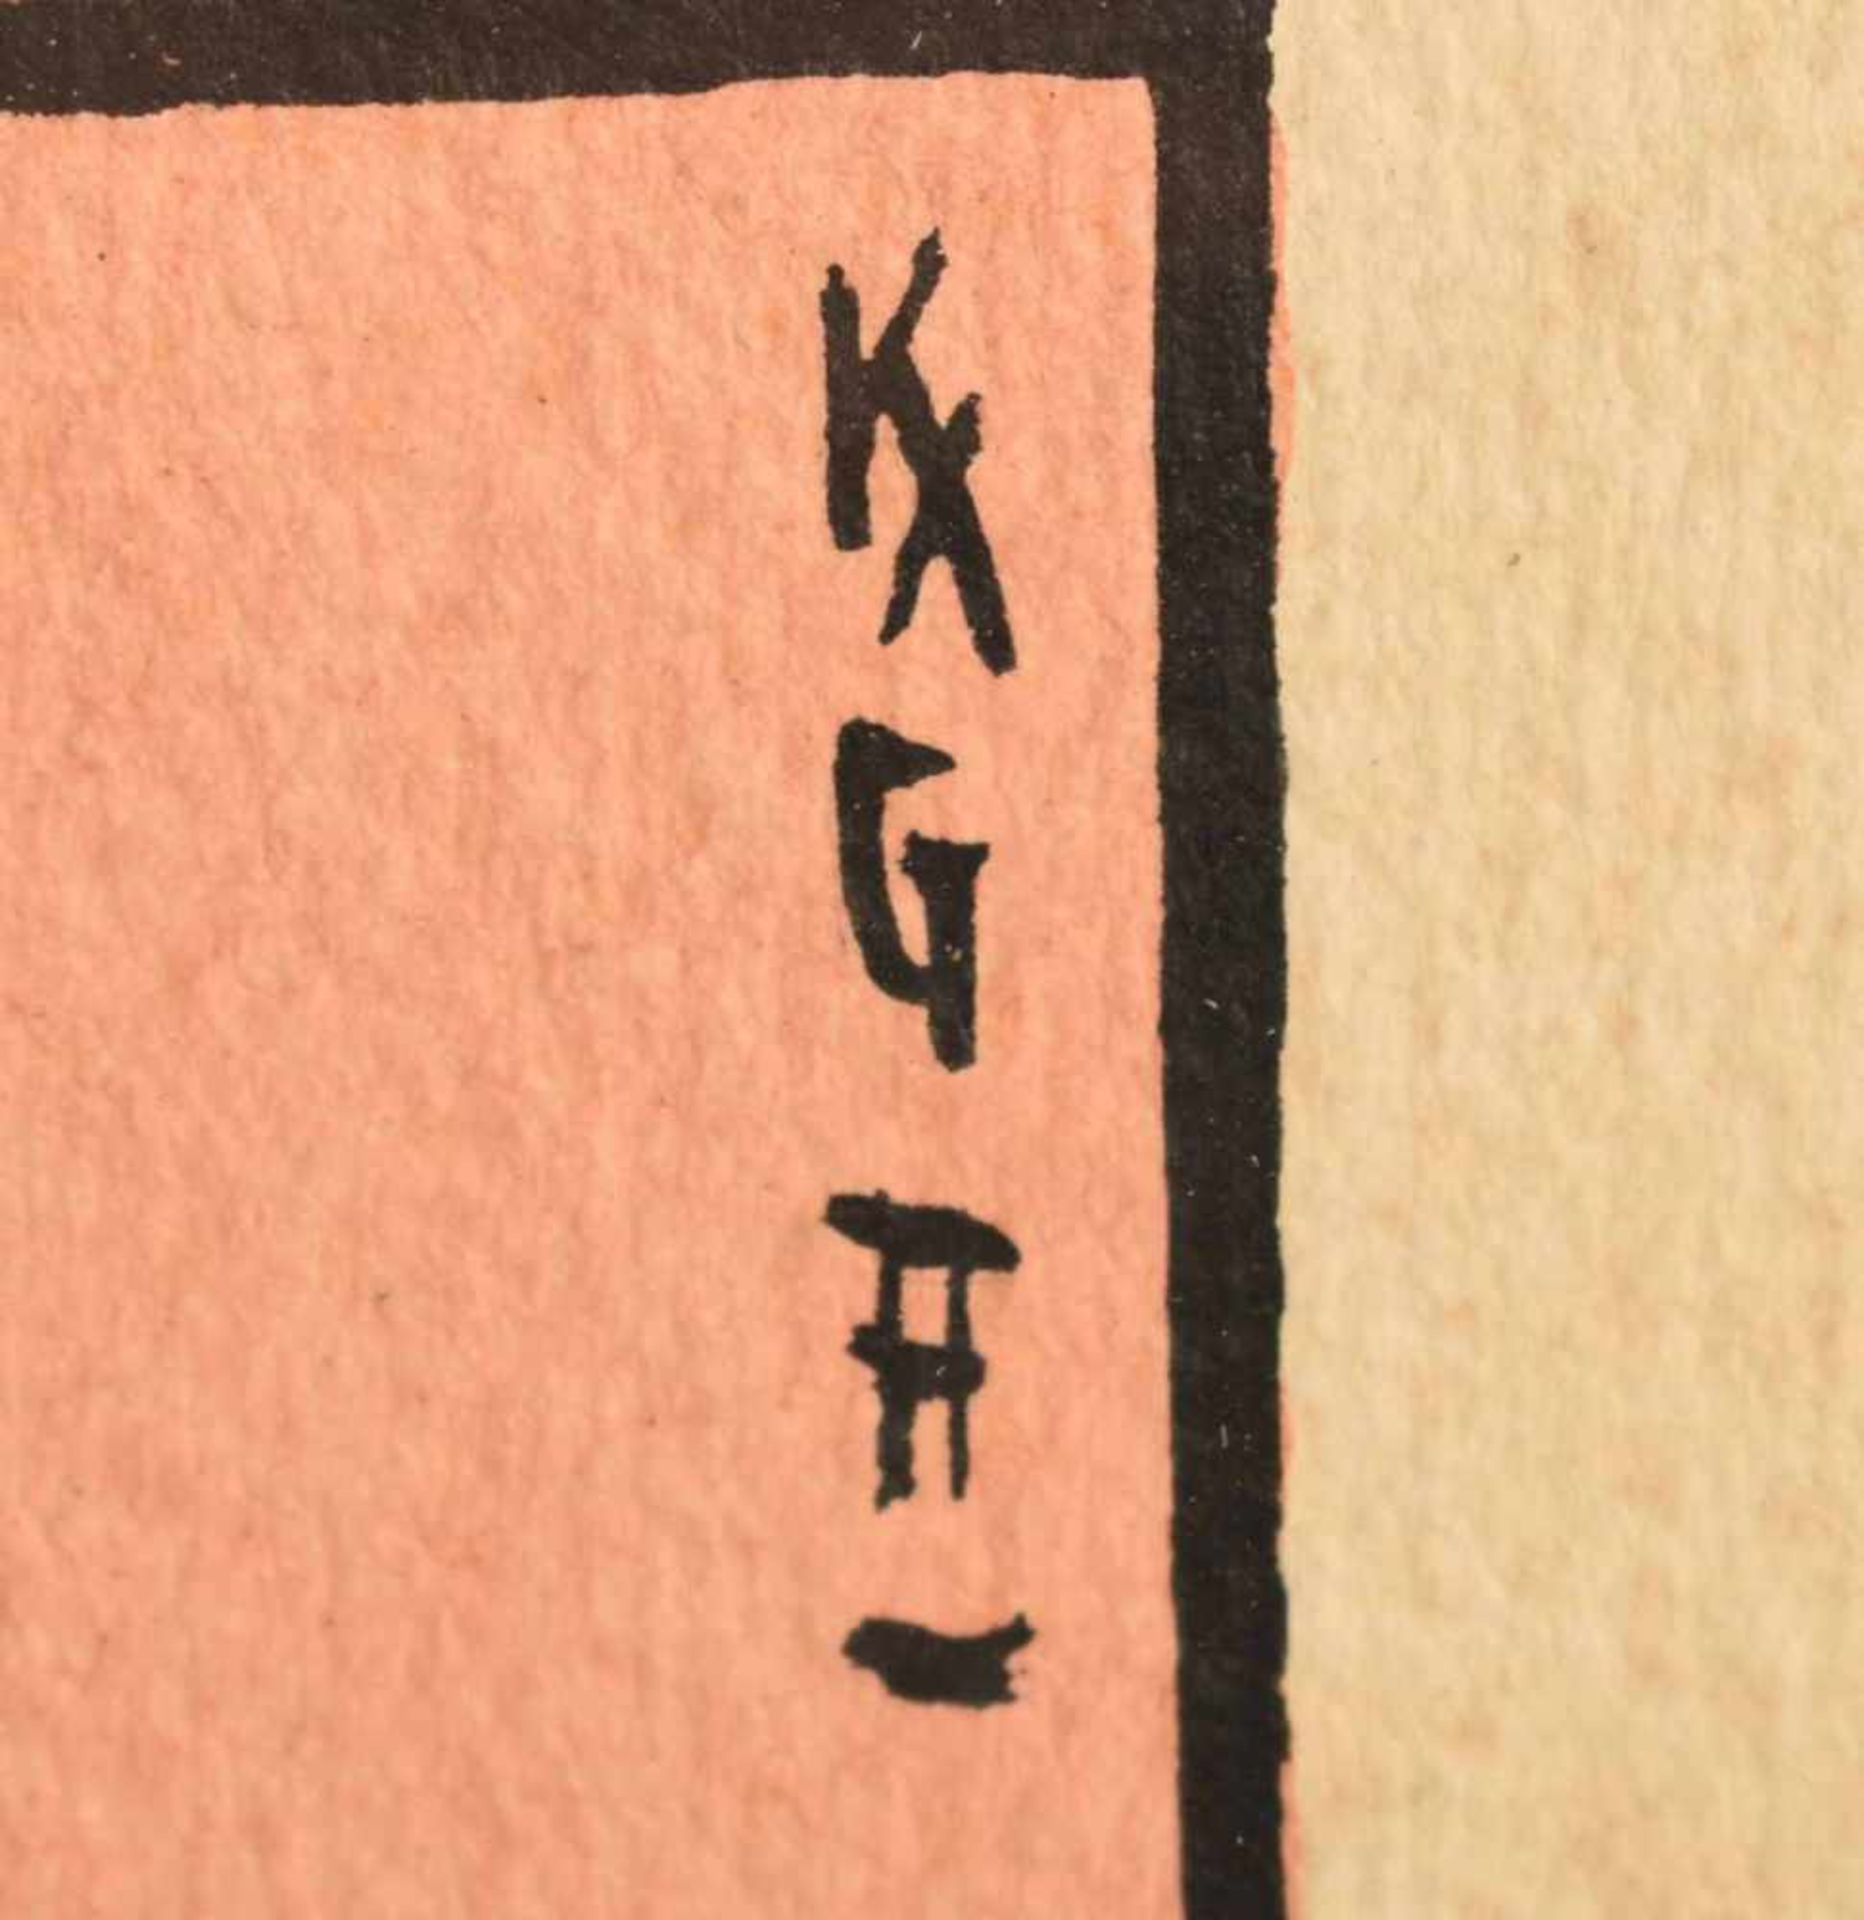 Monogrammiert Aquarell und Pinsel, Weg zwischen Häusern, rechts oben monogrammiert "KGA", in der - Bild 4 aus 4